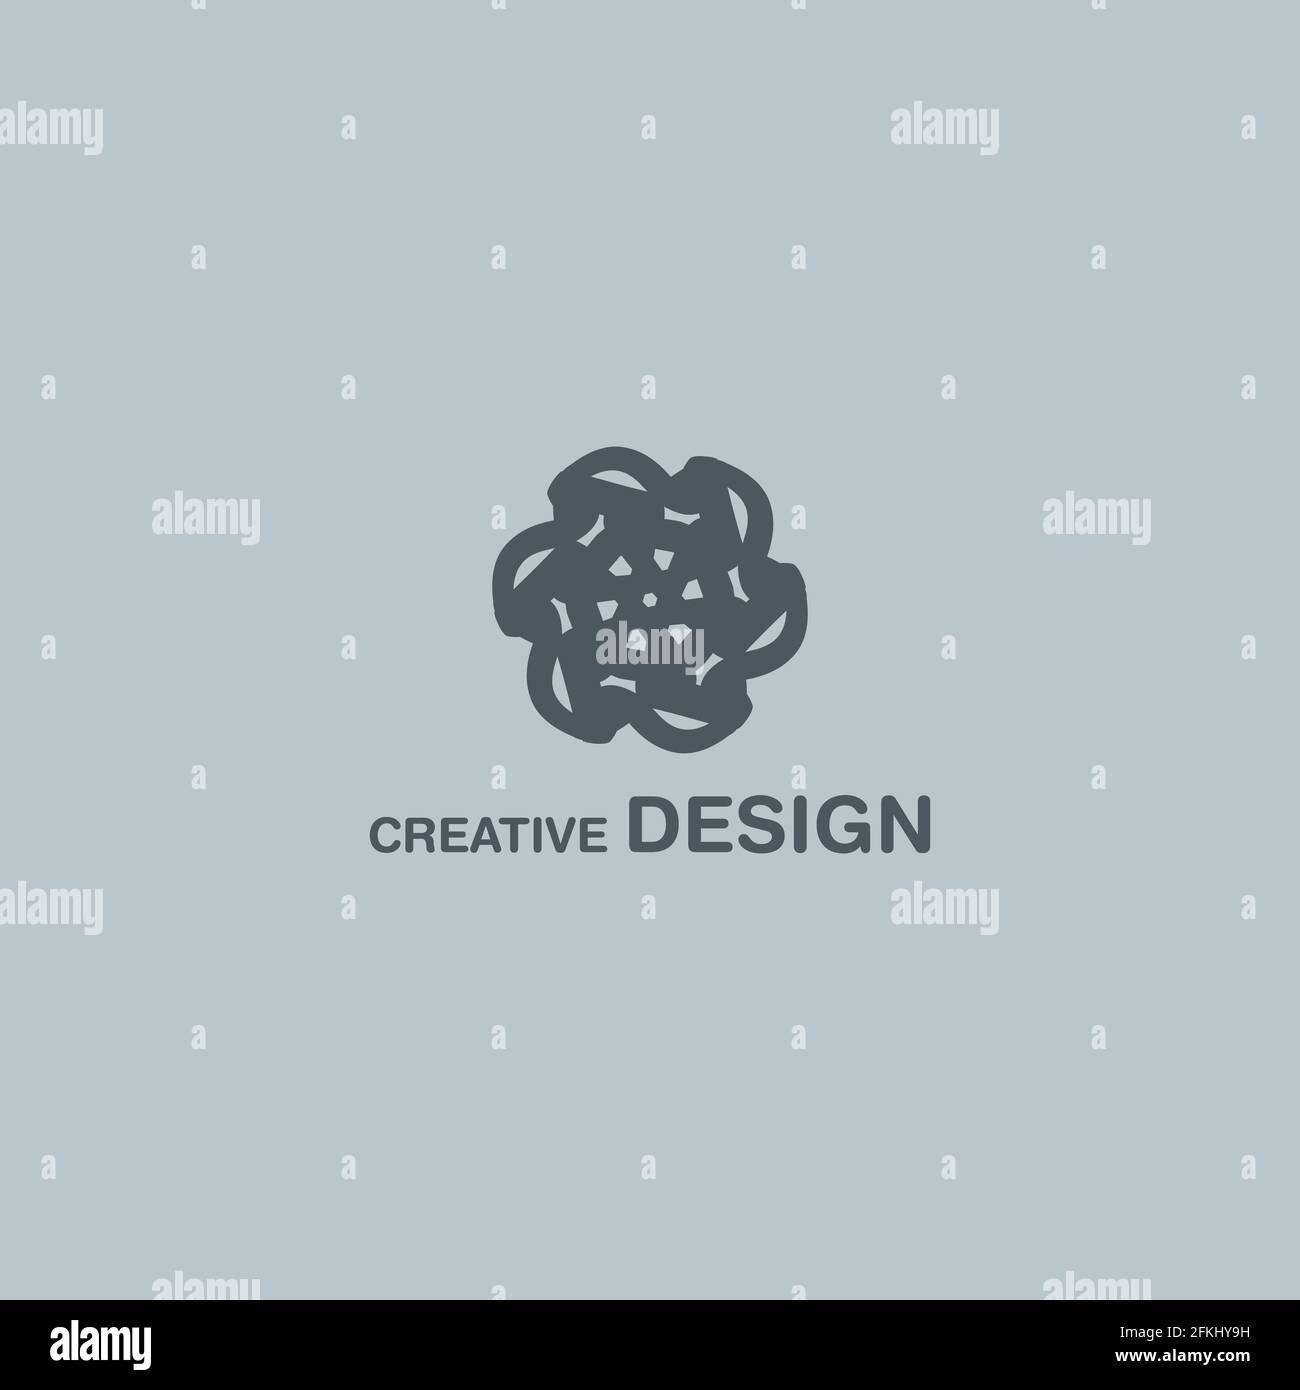 Cool Abstract Creative Design Vector Logo Art EPS10 Stock Vector